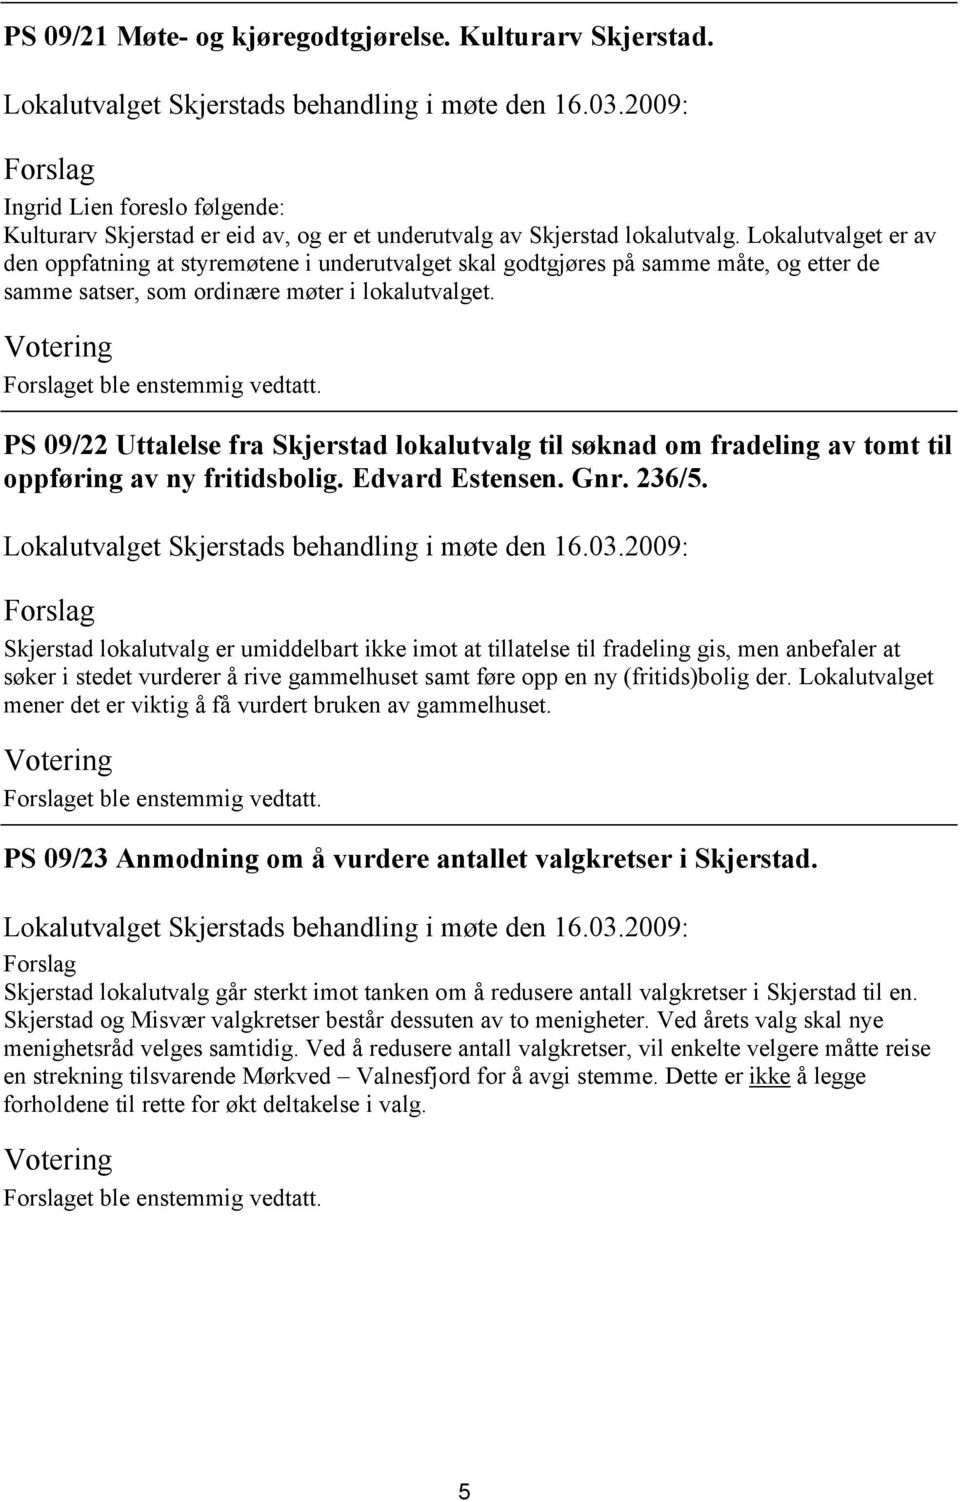 PS 09/22 Uttalelse fra Skjerstad lokalutvalg til søknad om fradeling av tomt til oppføring av ny fritidsbolig. Edvard Estensen. Gnr. 236/5.